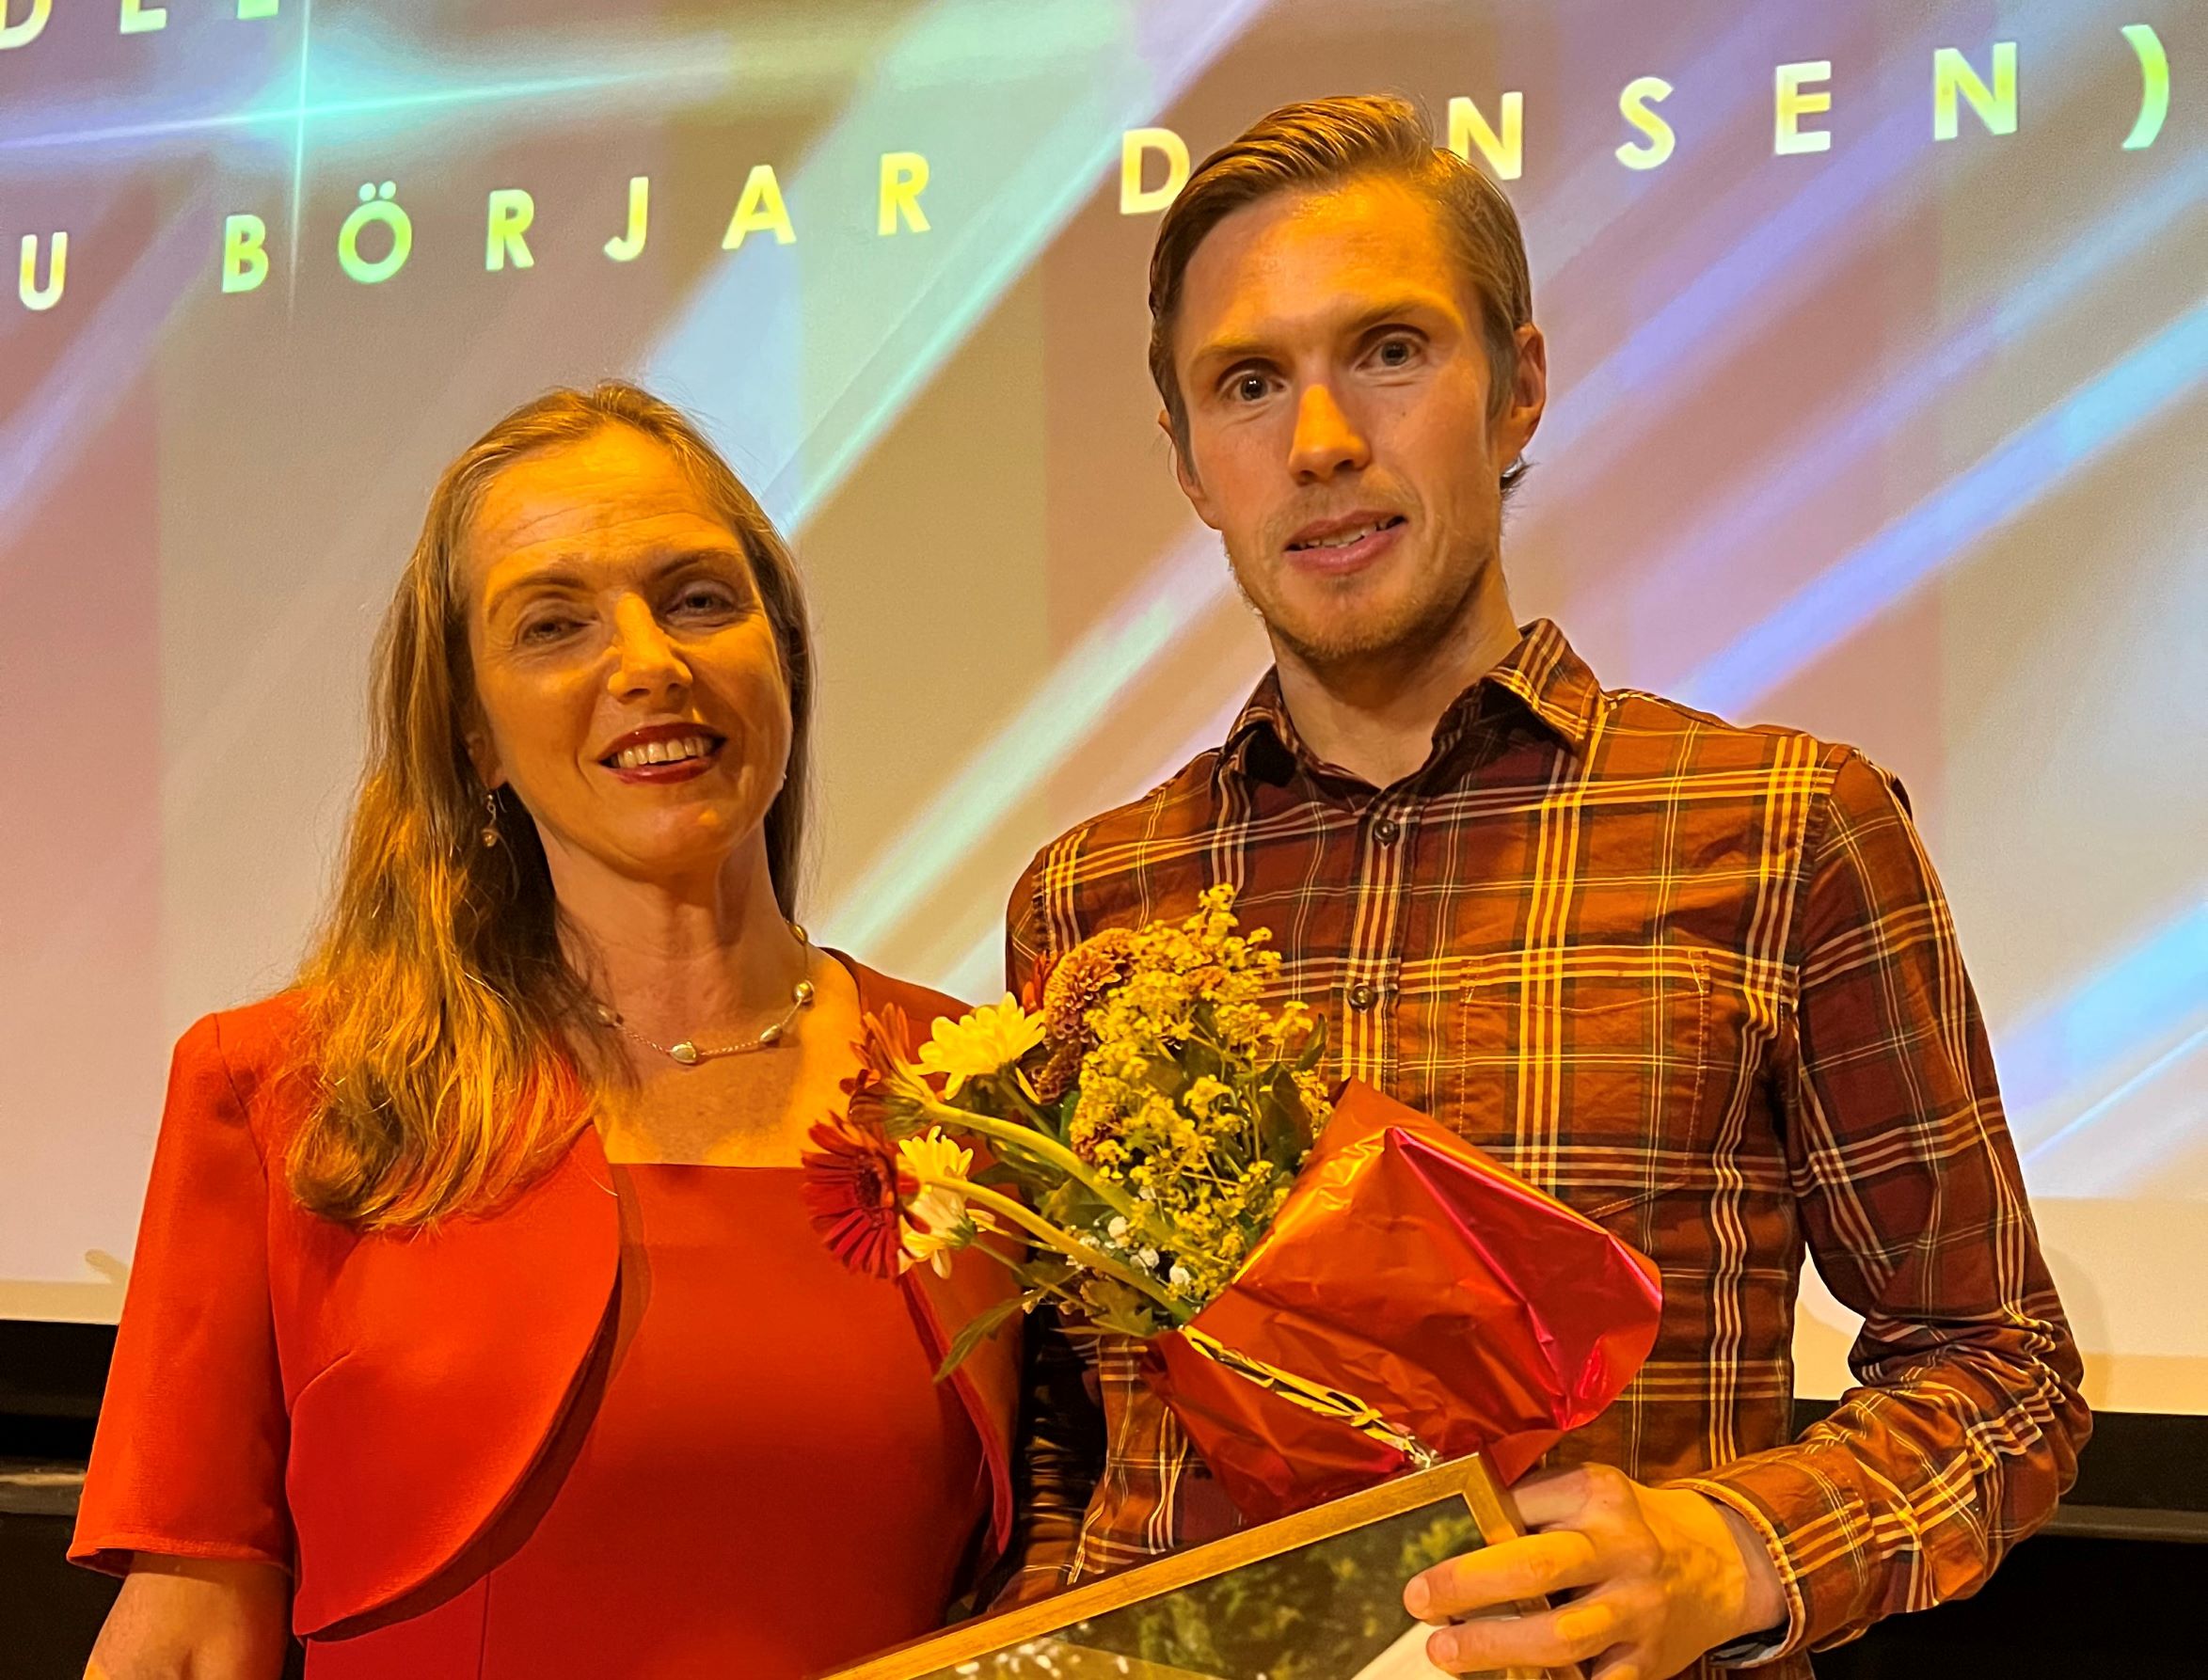 Martin Regborn mottar utmärkelsen Årets Orienterare av Svenska Orienteringsförbundets förbundschef Susanne Maarup. Bild: Johan Trygg.